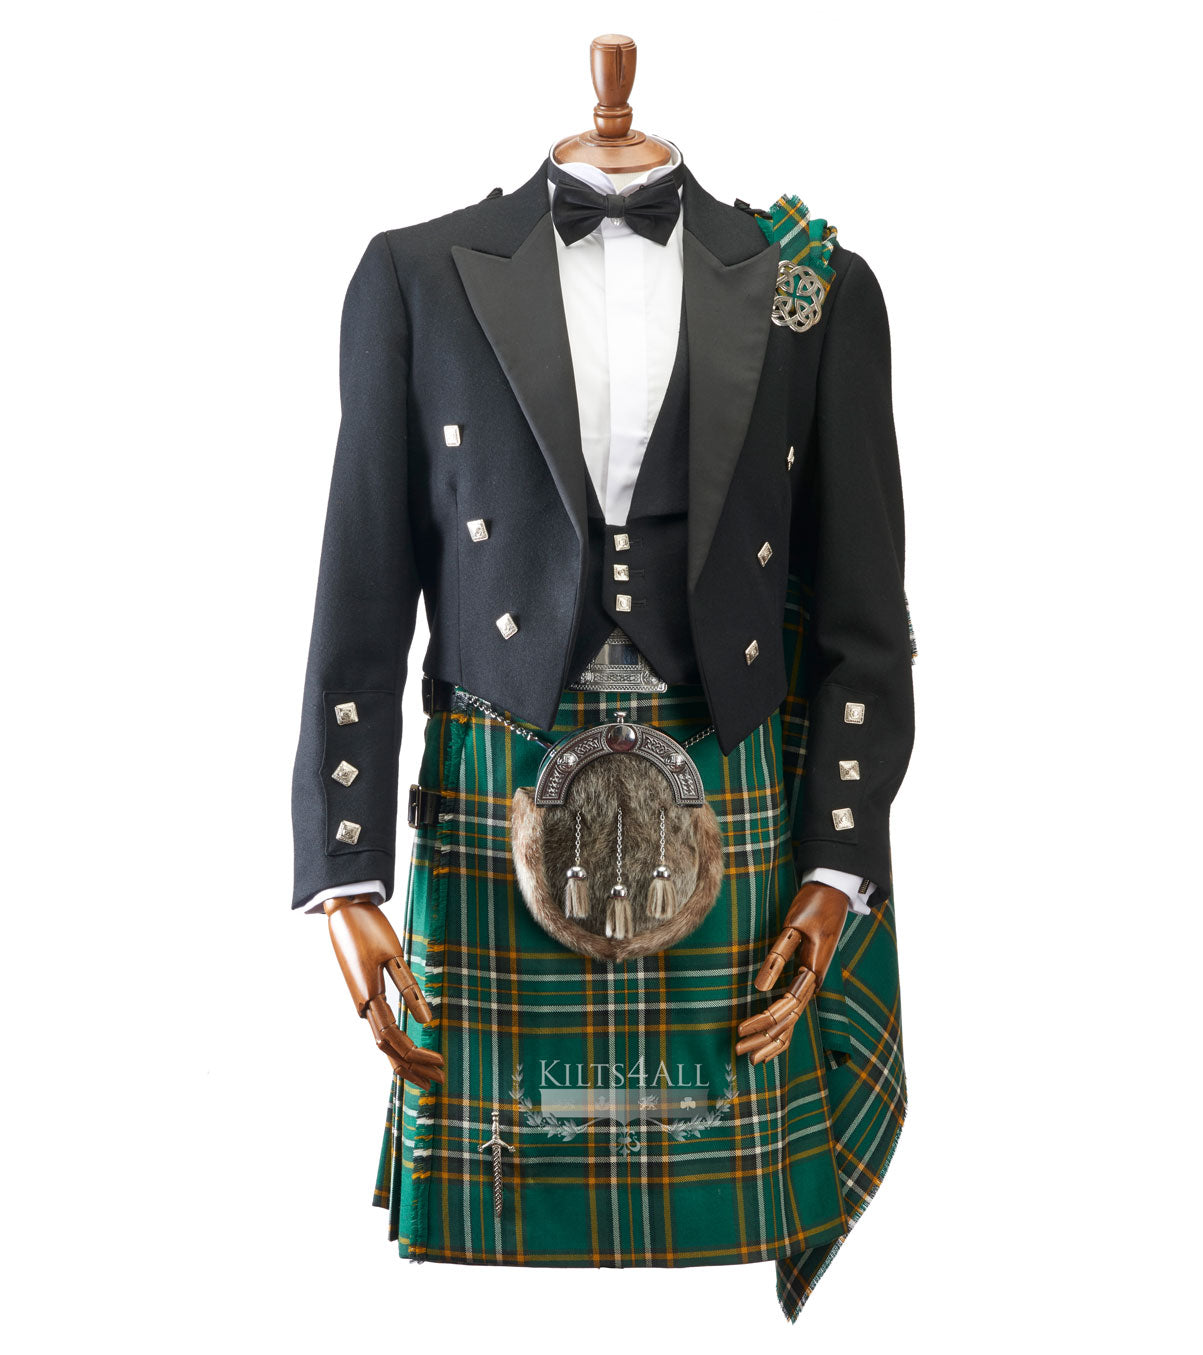 Mens Irish Tartan Kilt Outfit to Hire – Kilts4All